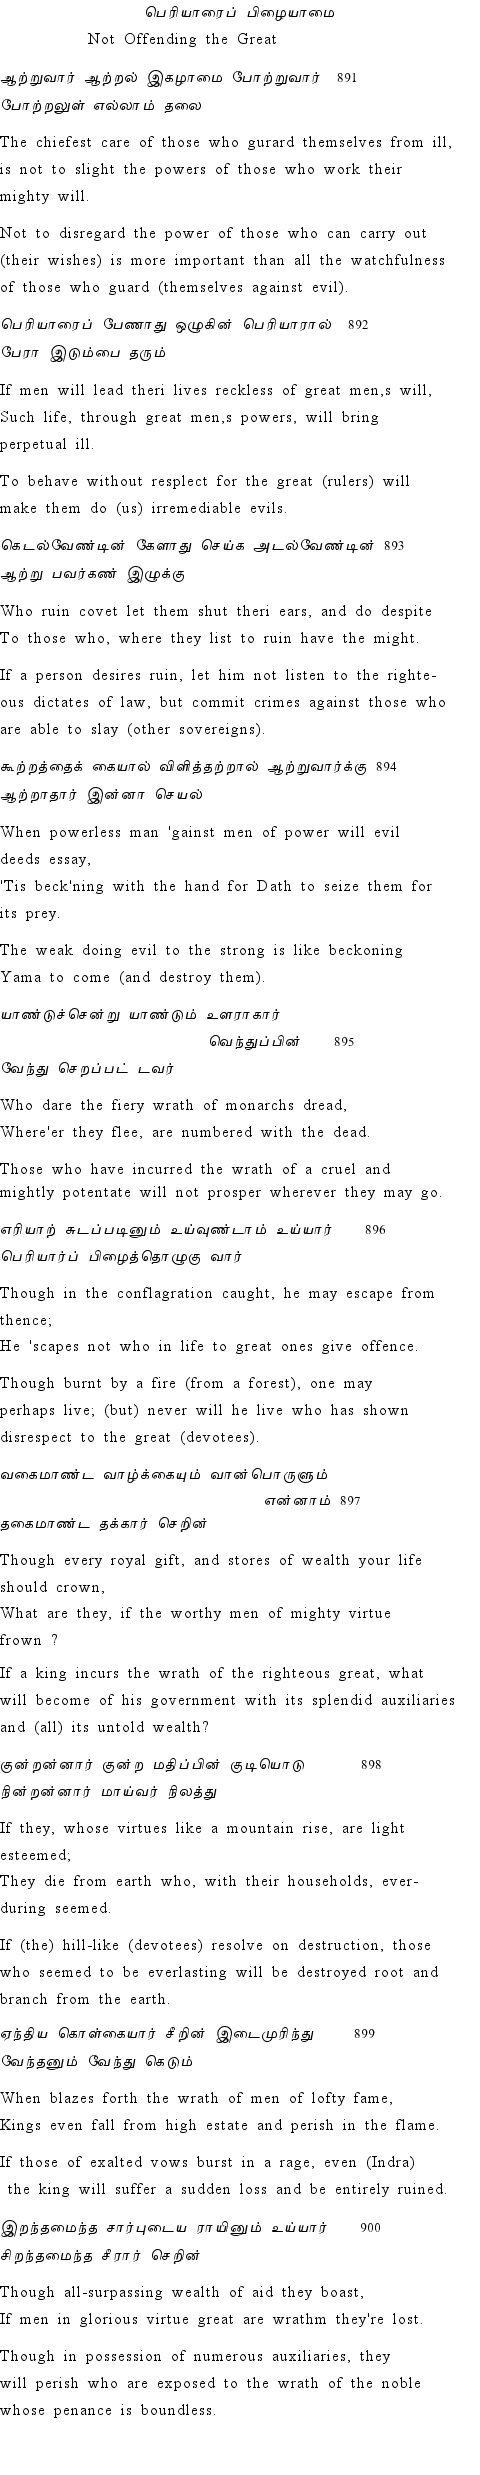 Text of Adhikaram 90